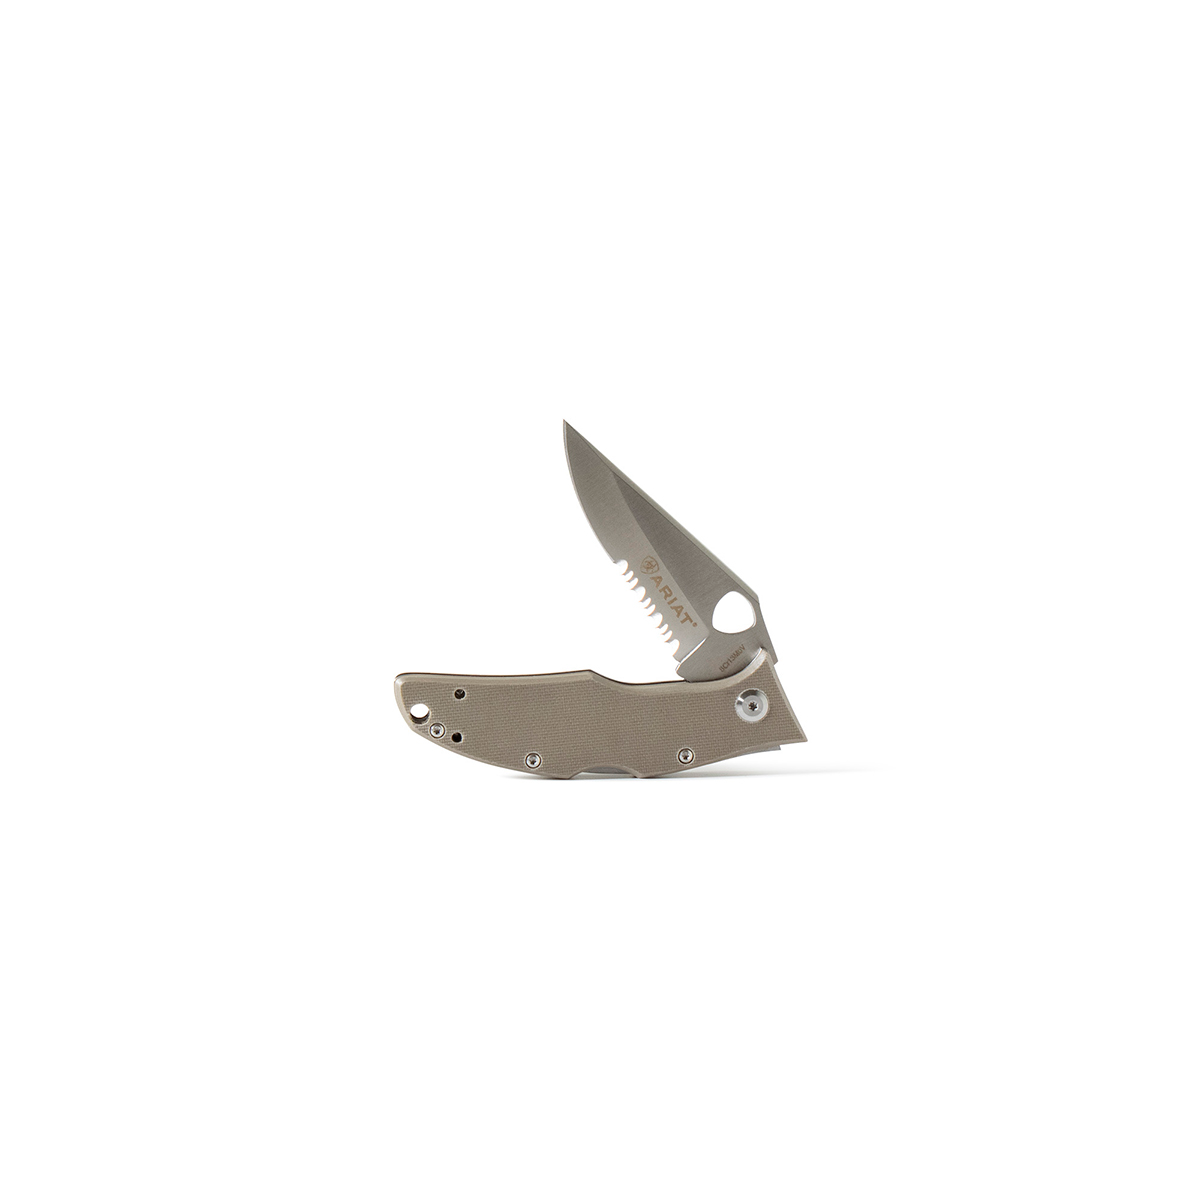 Ariat 3.5" Hybrid Folding Knife - Olive Handle